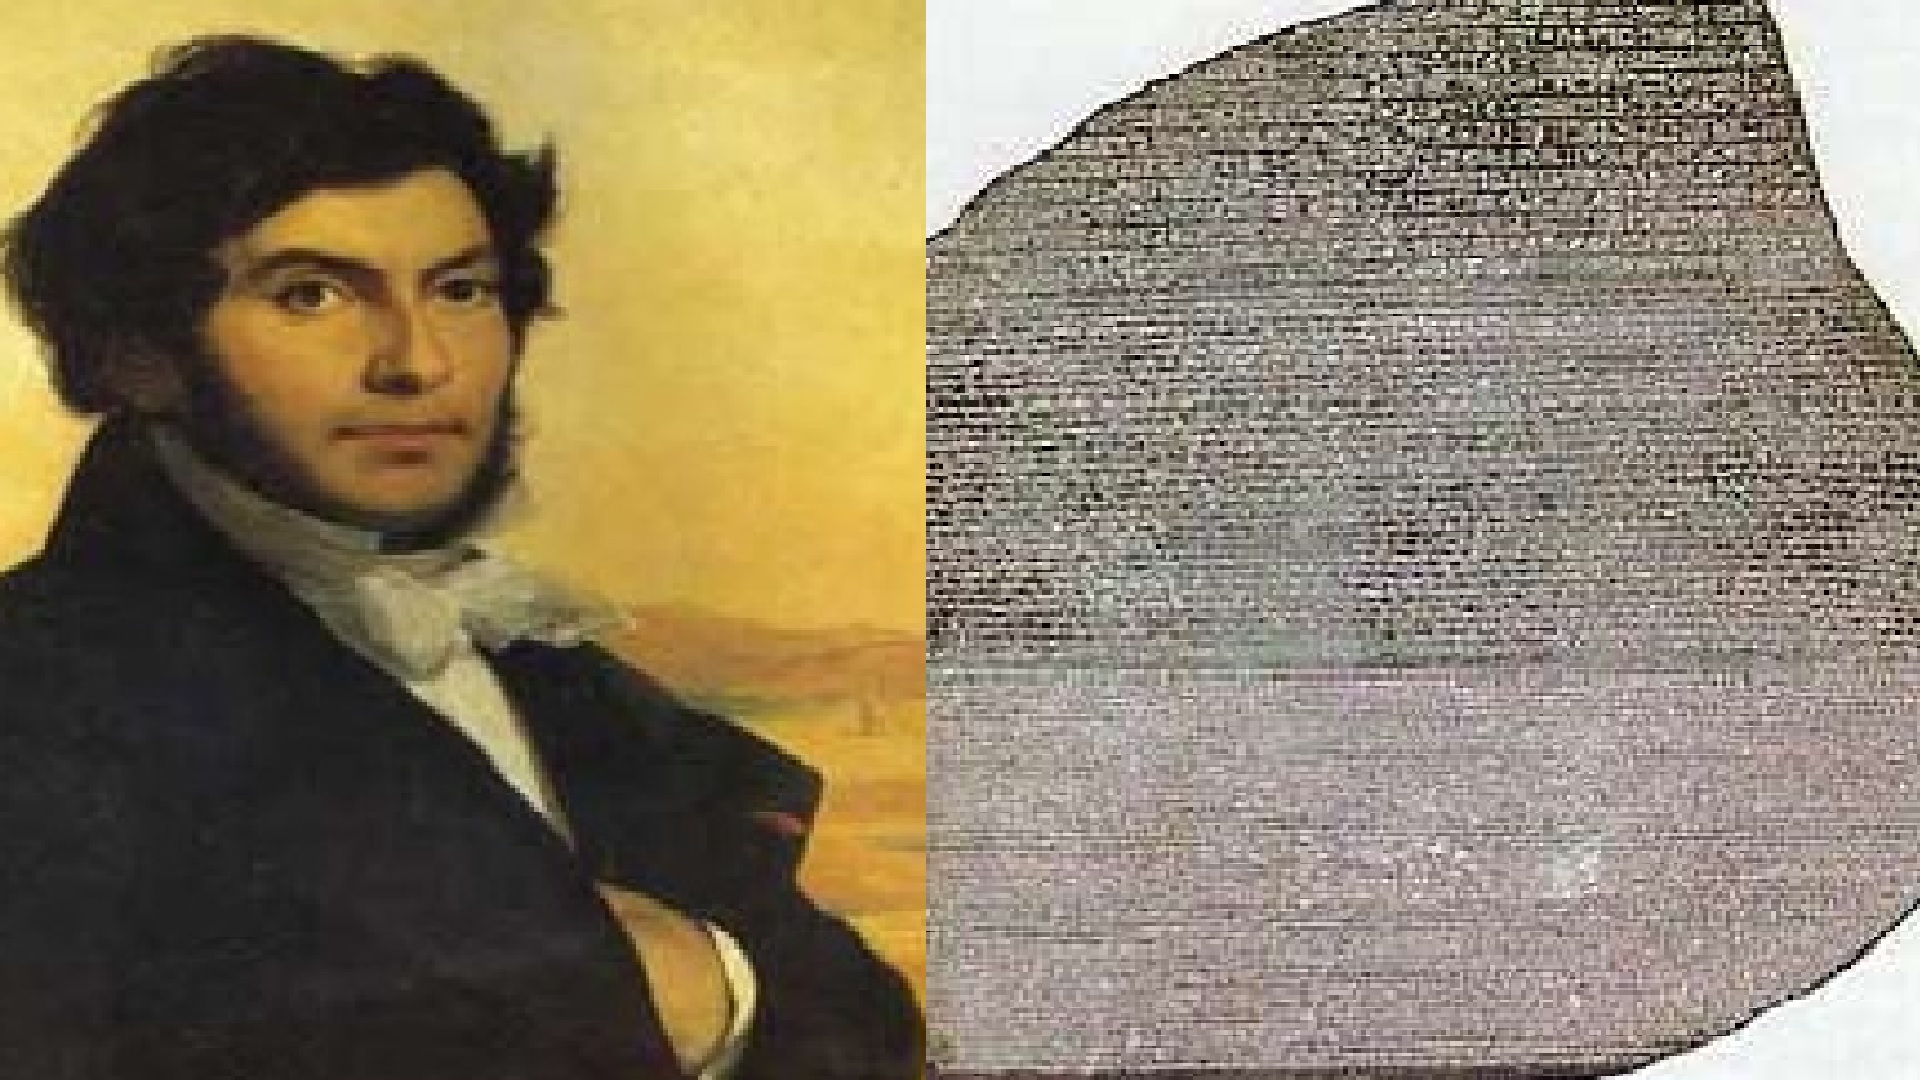 El egiptólogo francés Jean-François Champollion quien interpretó el lenguaje en 1822.